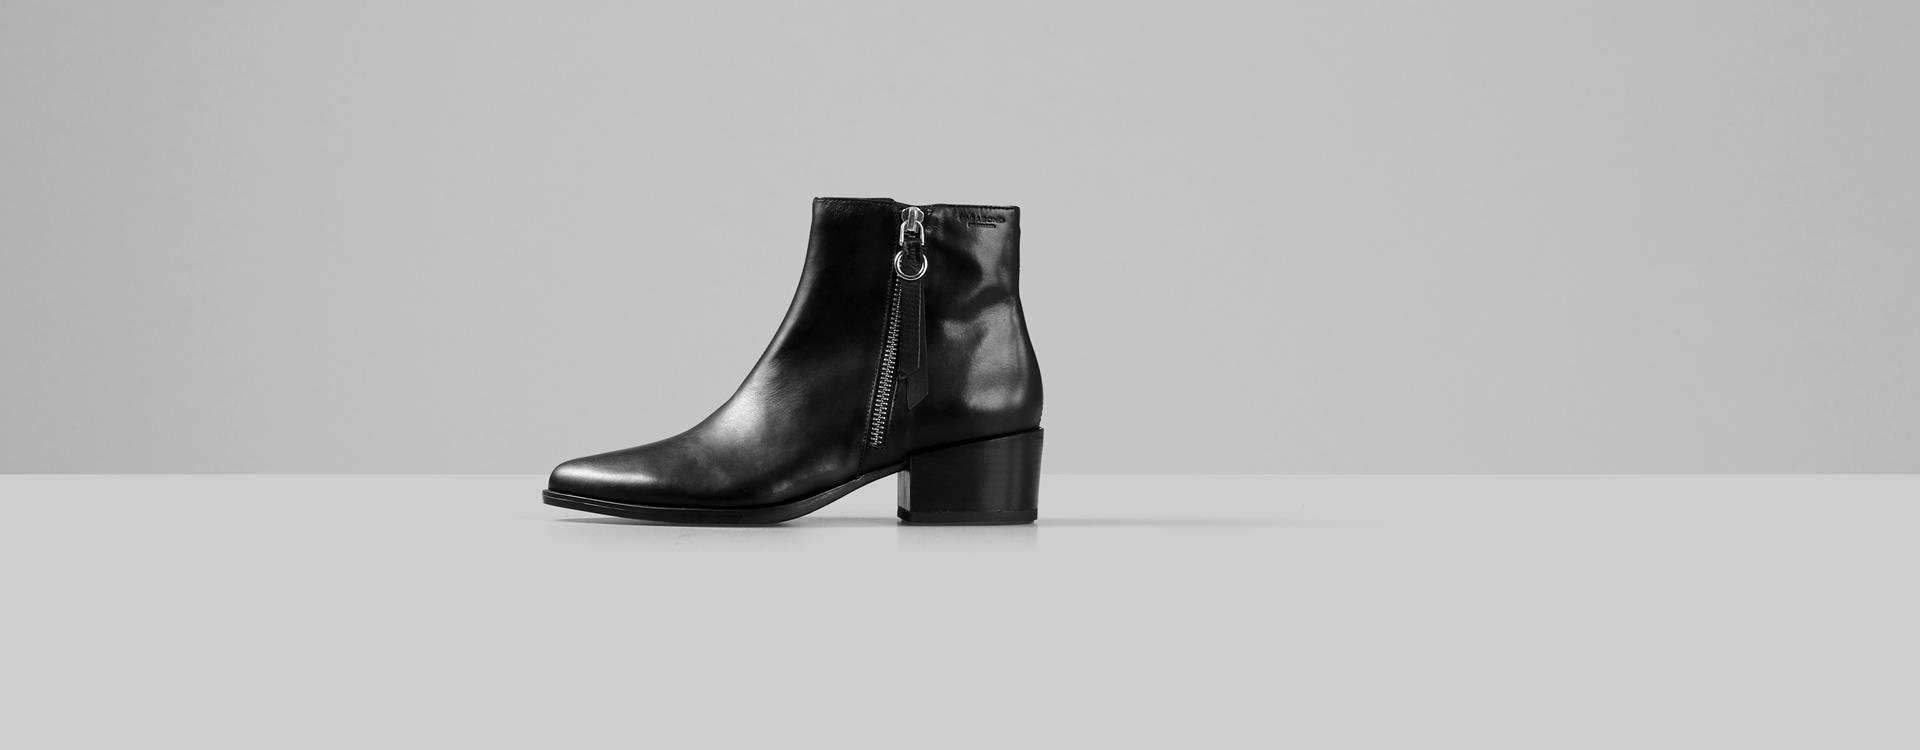 Marja Leather Boots - Black - Vagabond